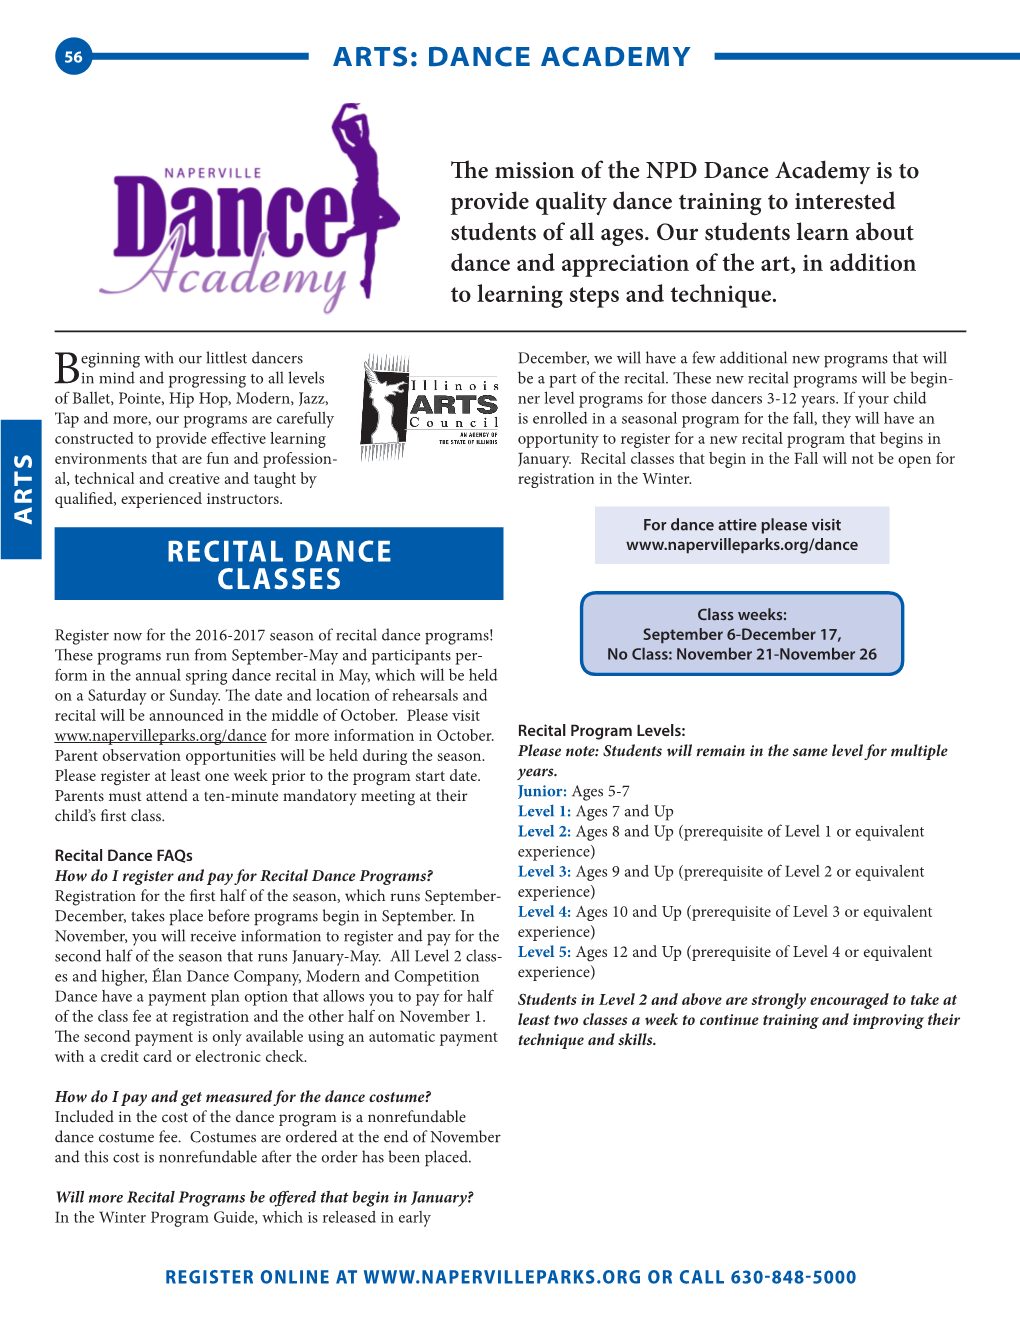 Recital Dance Classes